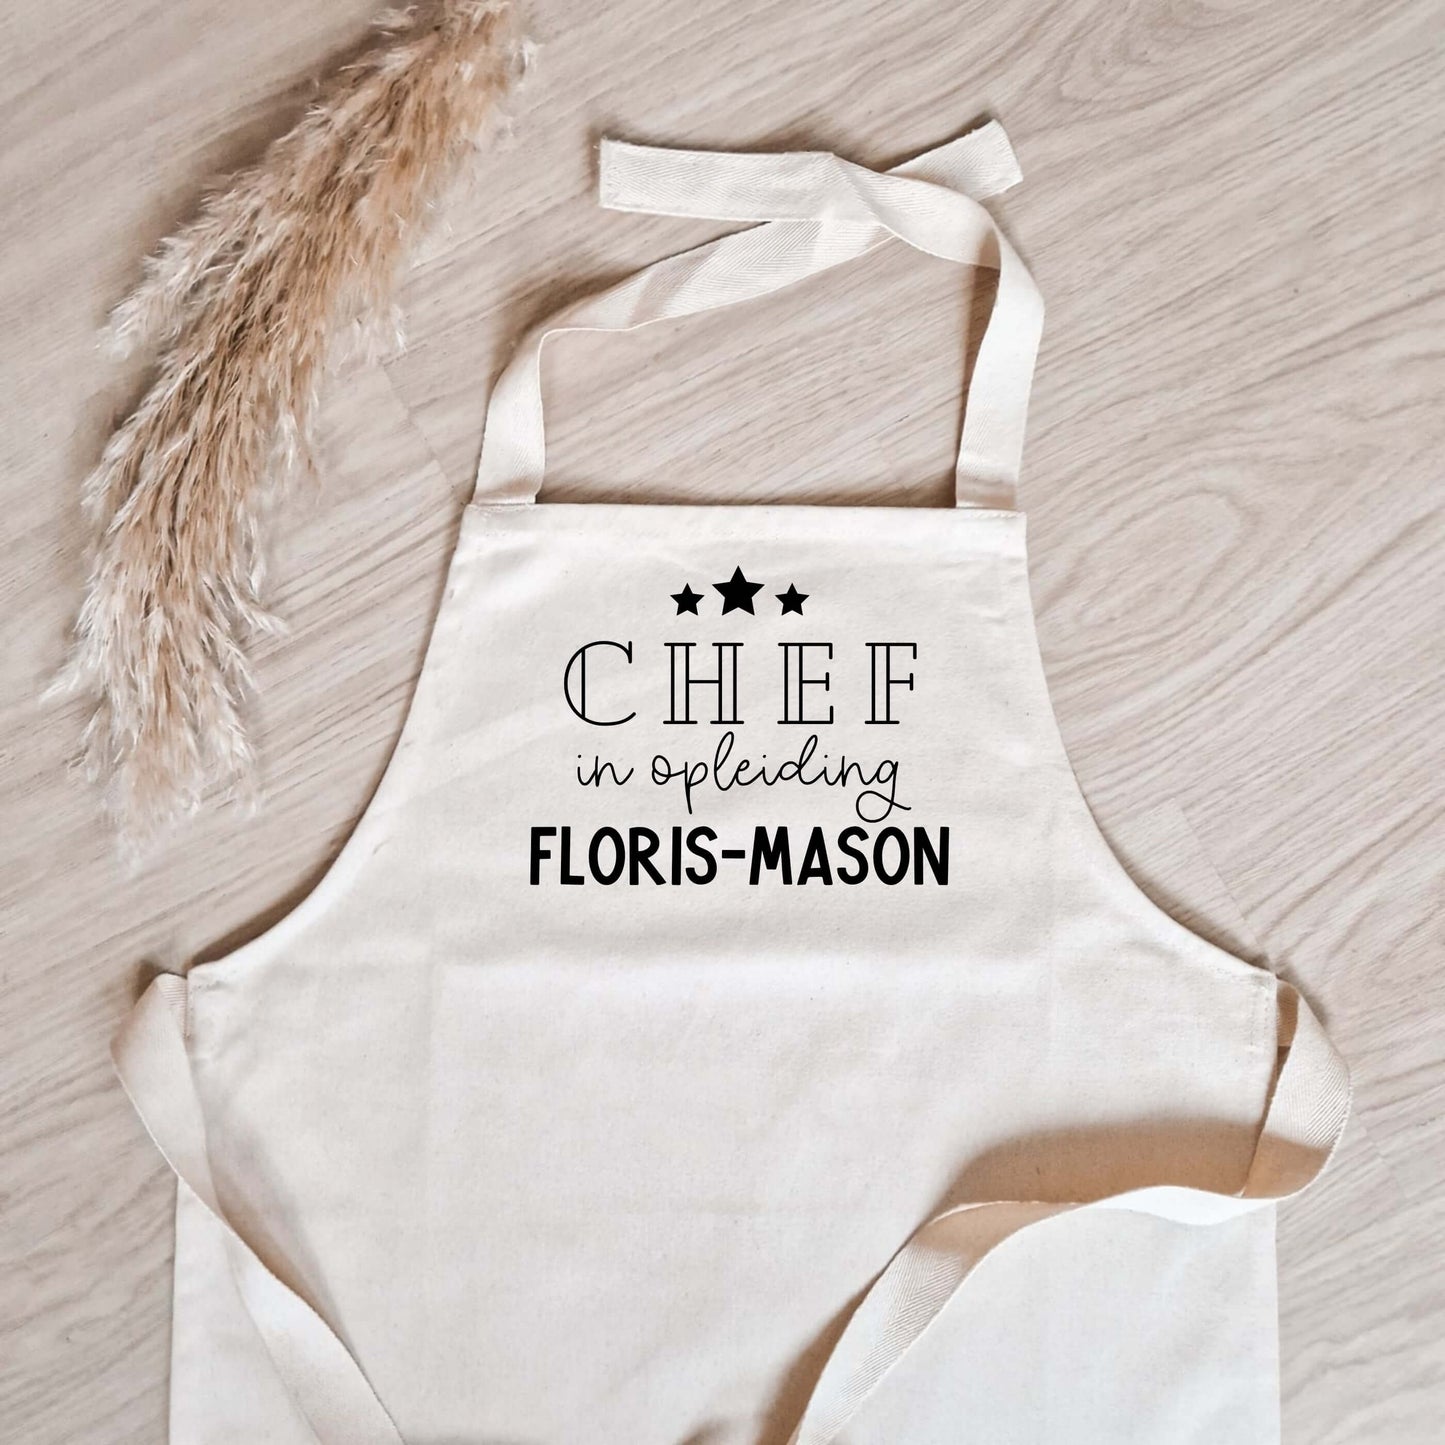 Kinderschort met naam met 3 sterren met de tekst "chef in opleiding" met daaronder de naam (close-up foto)